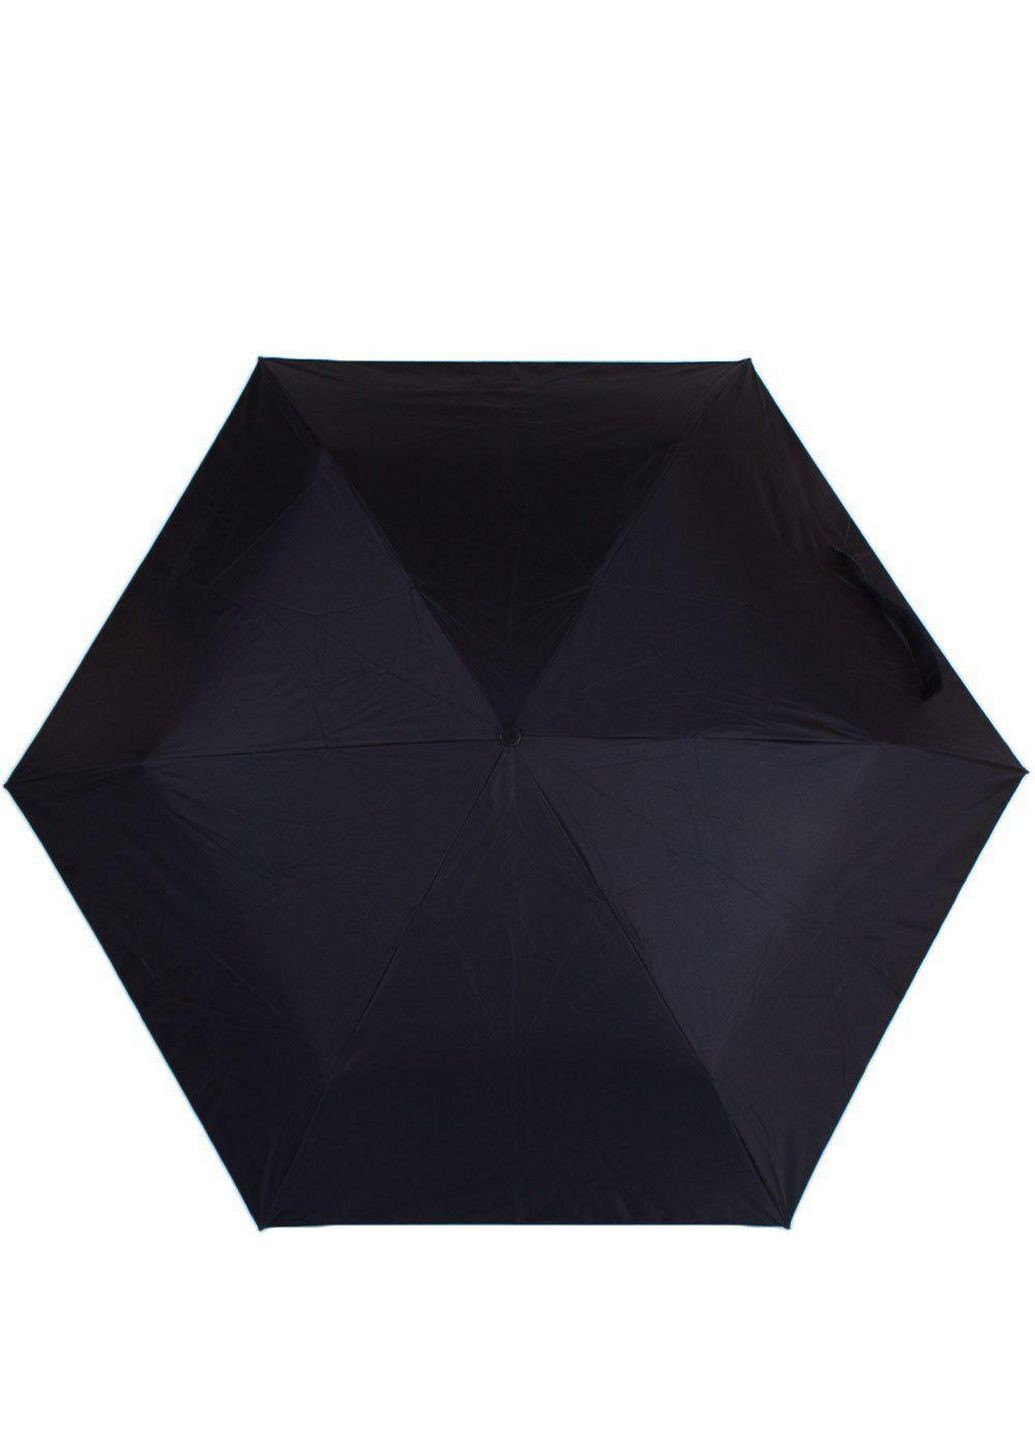 Женский складной зонт механический Happy Rain (282587744)